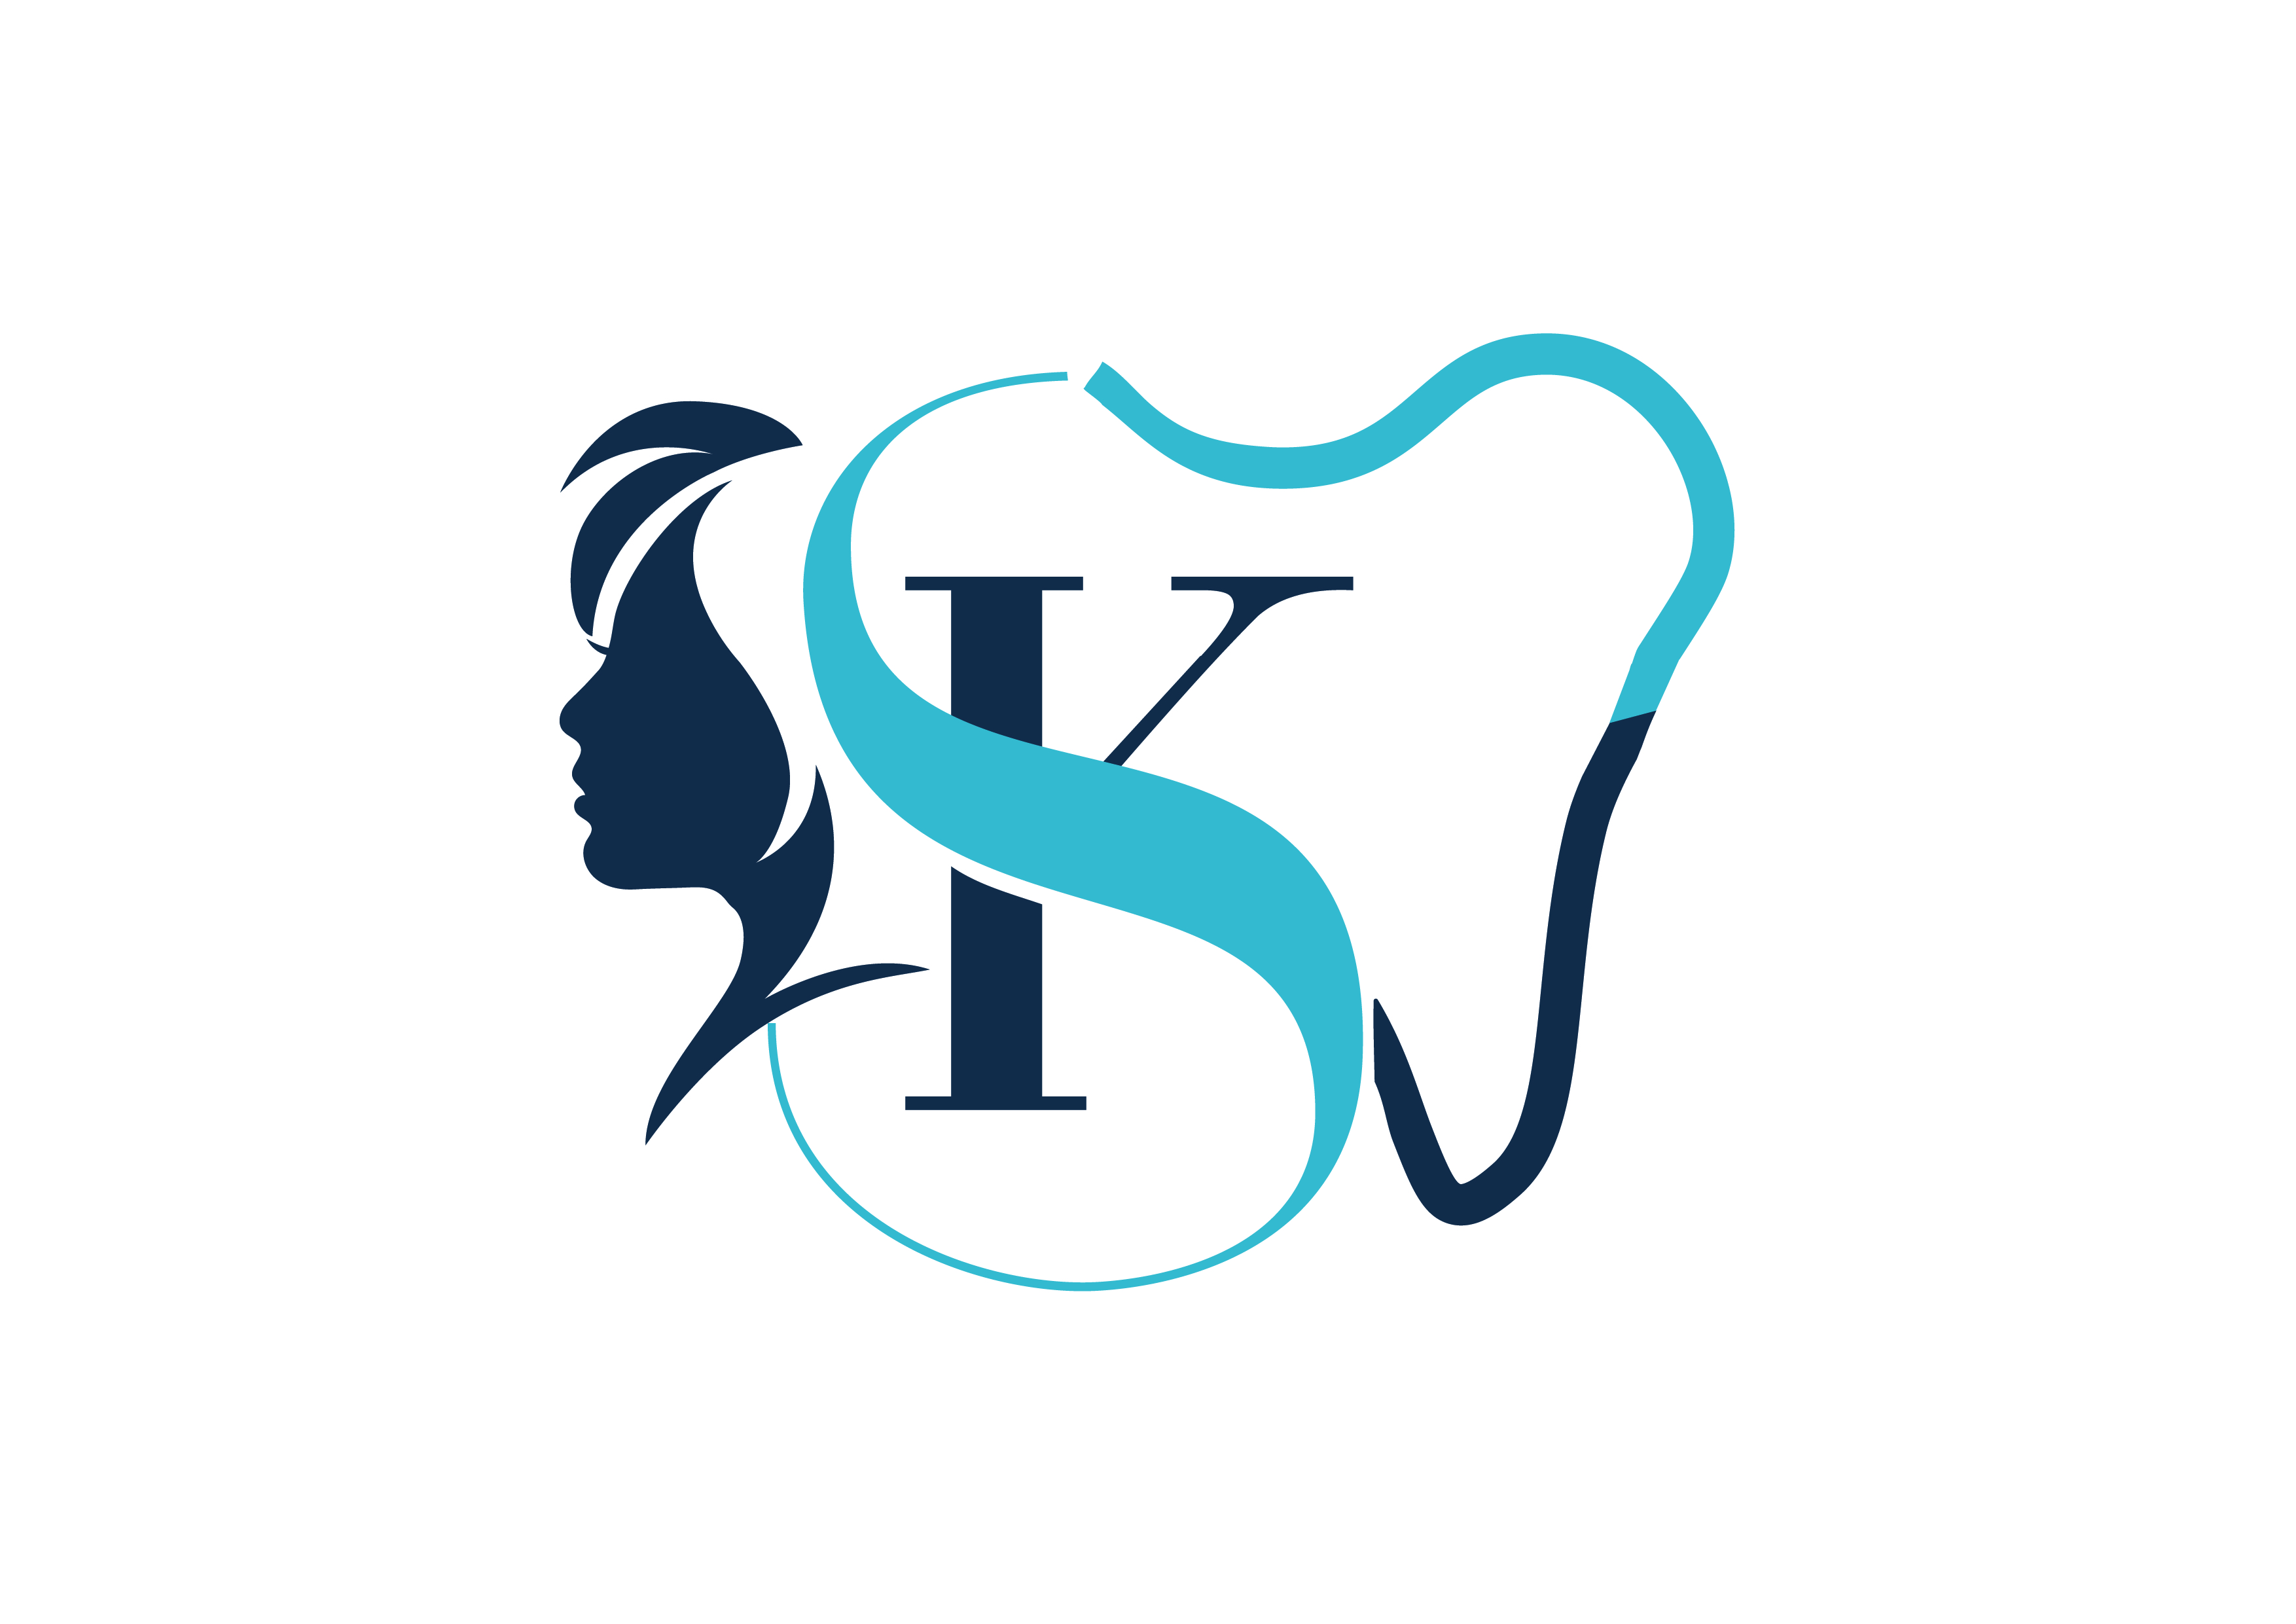 SK Dental Care|Hospitals|Medical Services